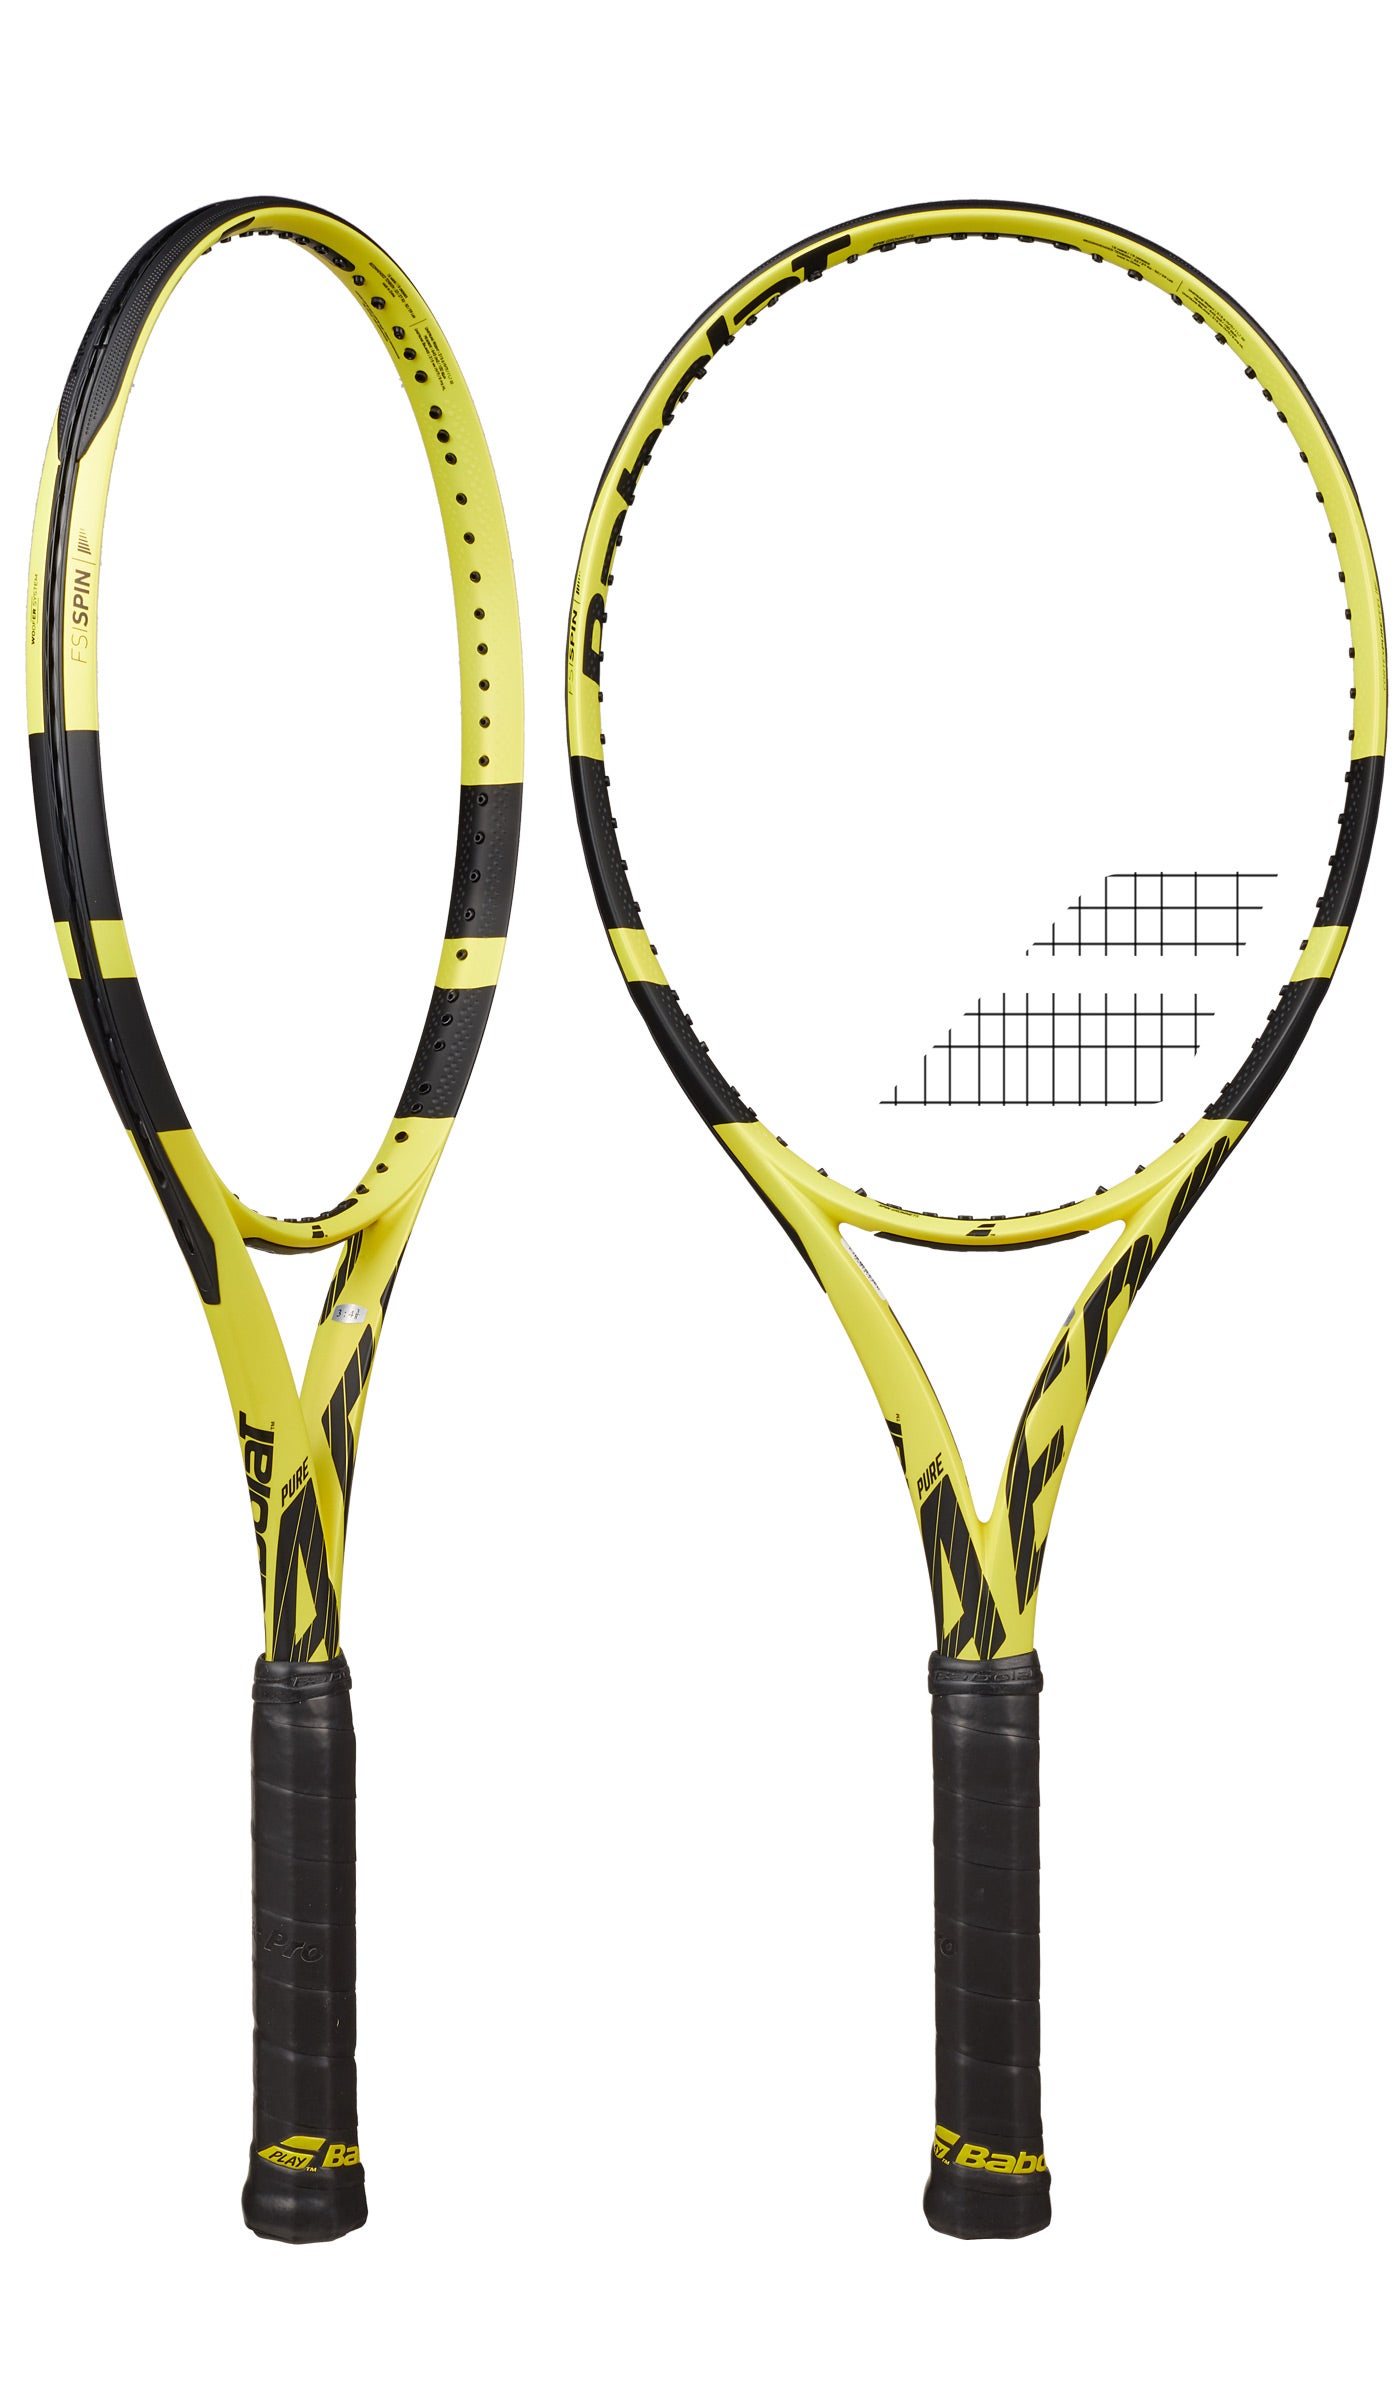 Authorized Dealer for sale online Babolat Pure Aero Tour 2019 Tennis Racquet Racket 4 1/4 